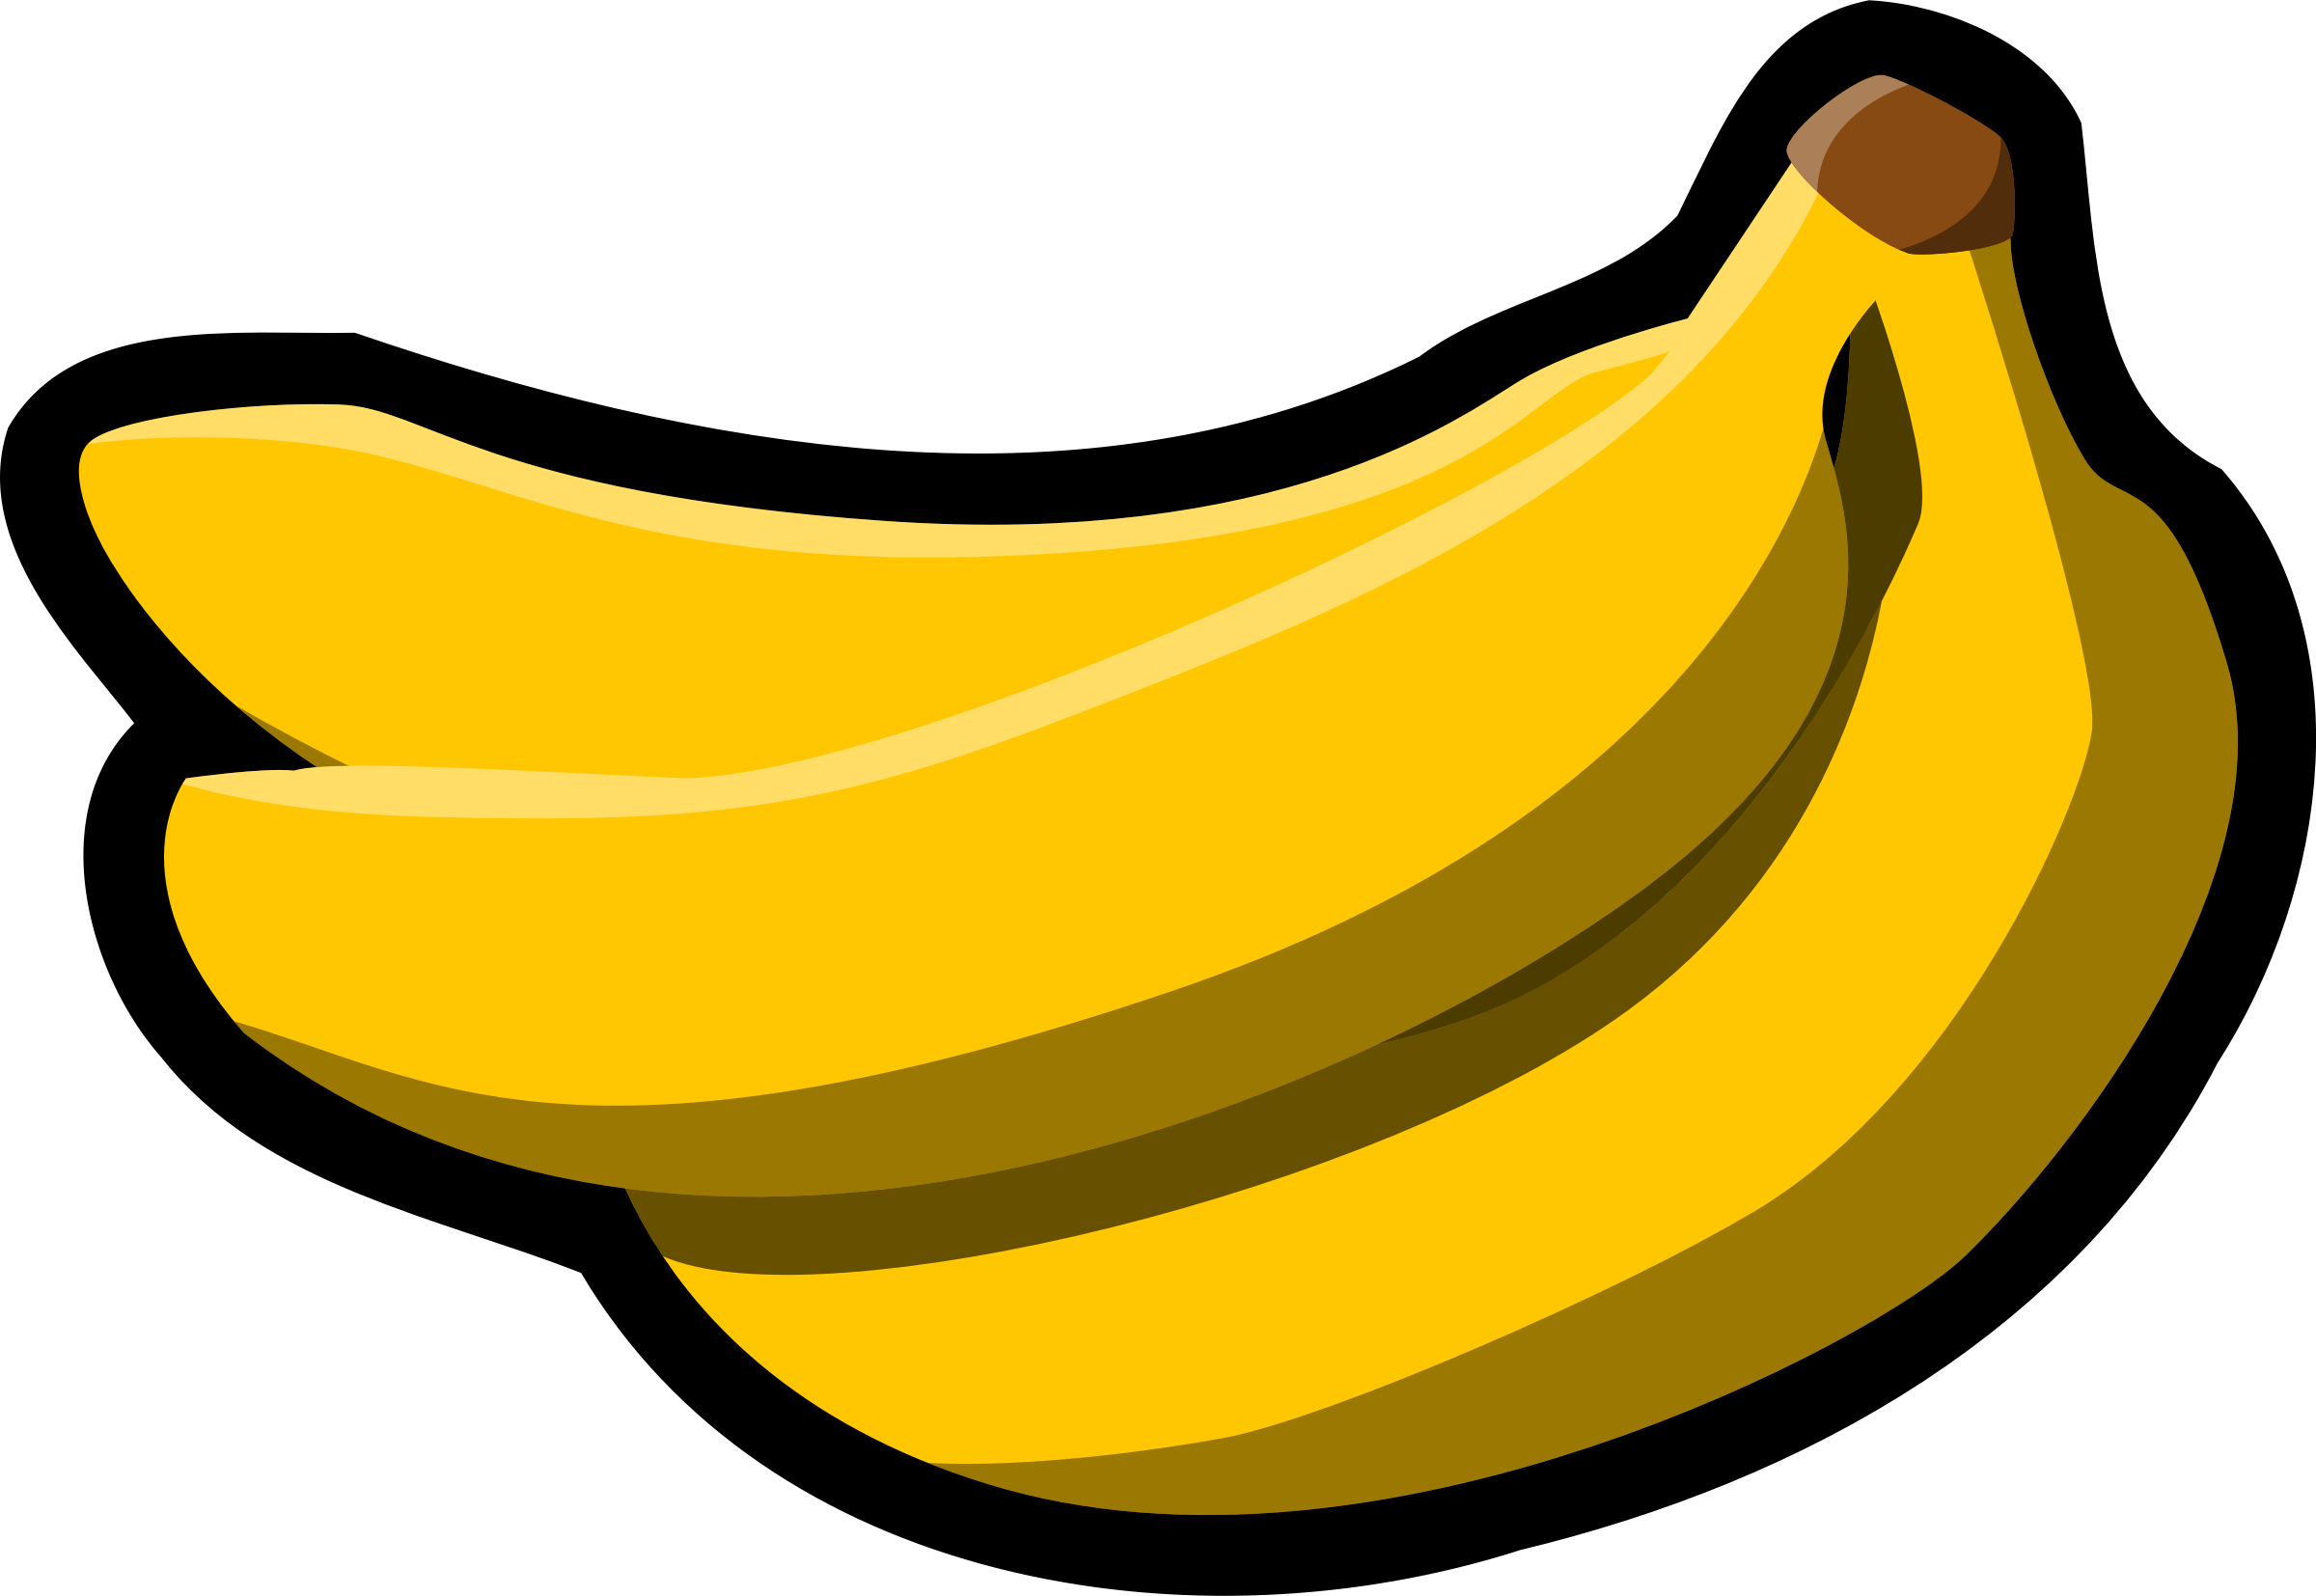 Banana clipart pdf. Bananas big image png